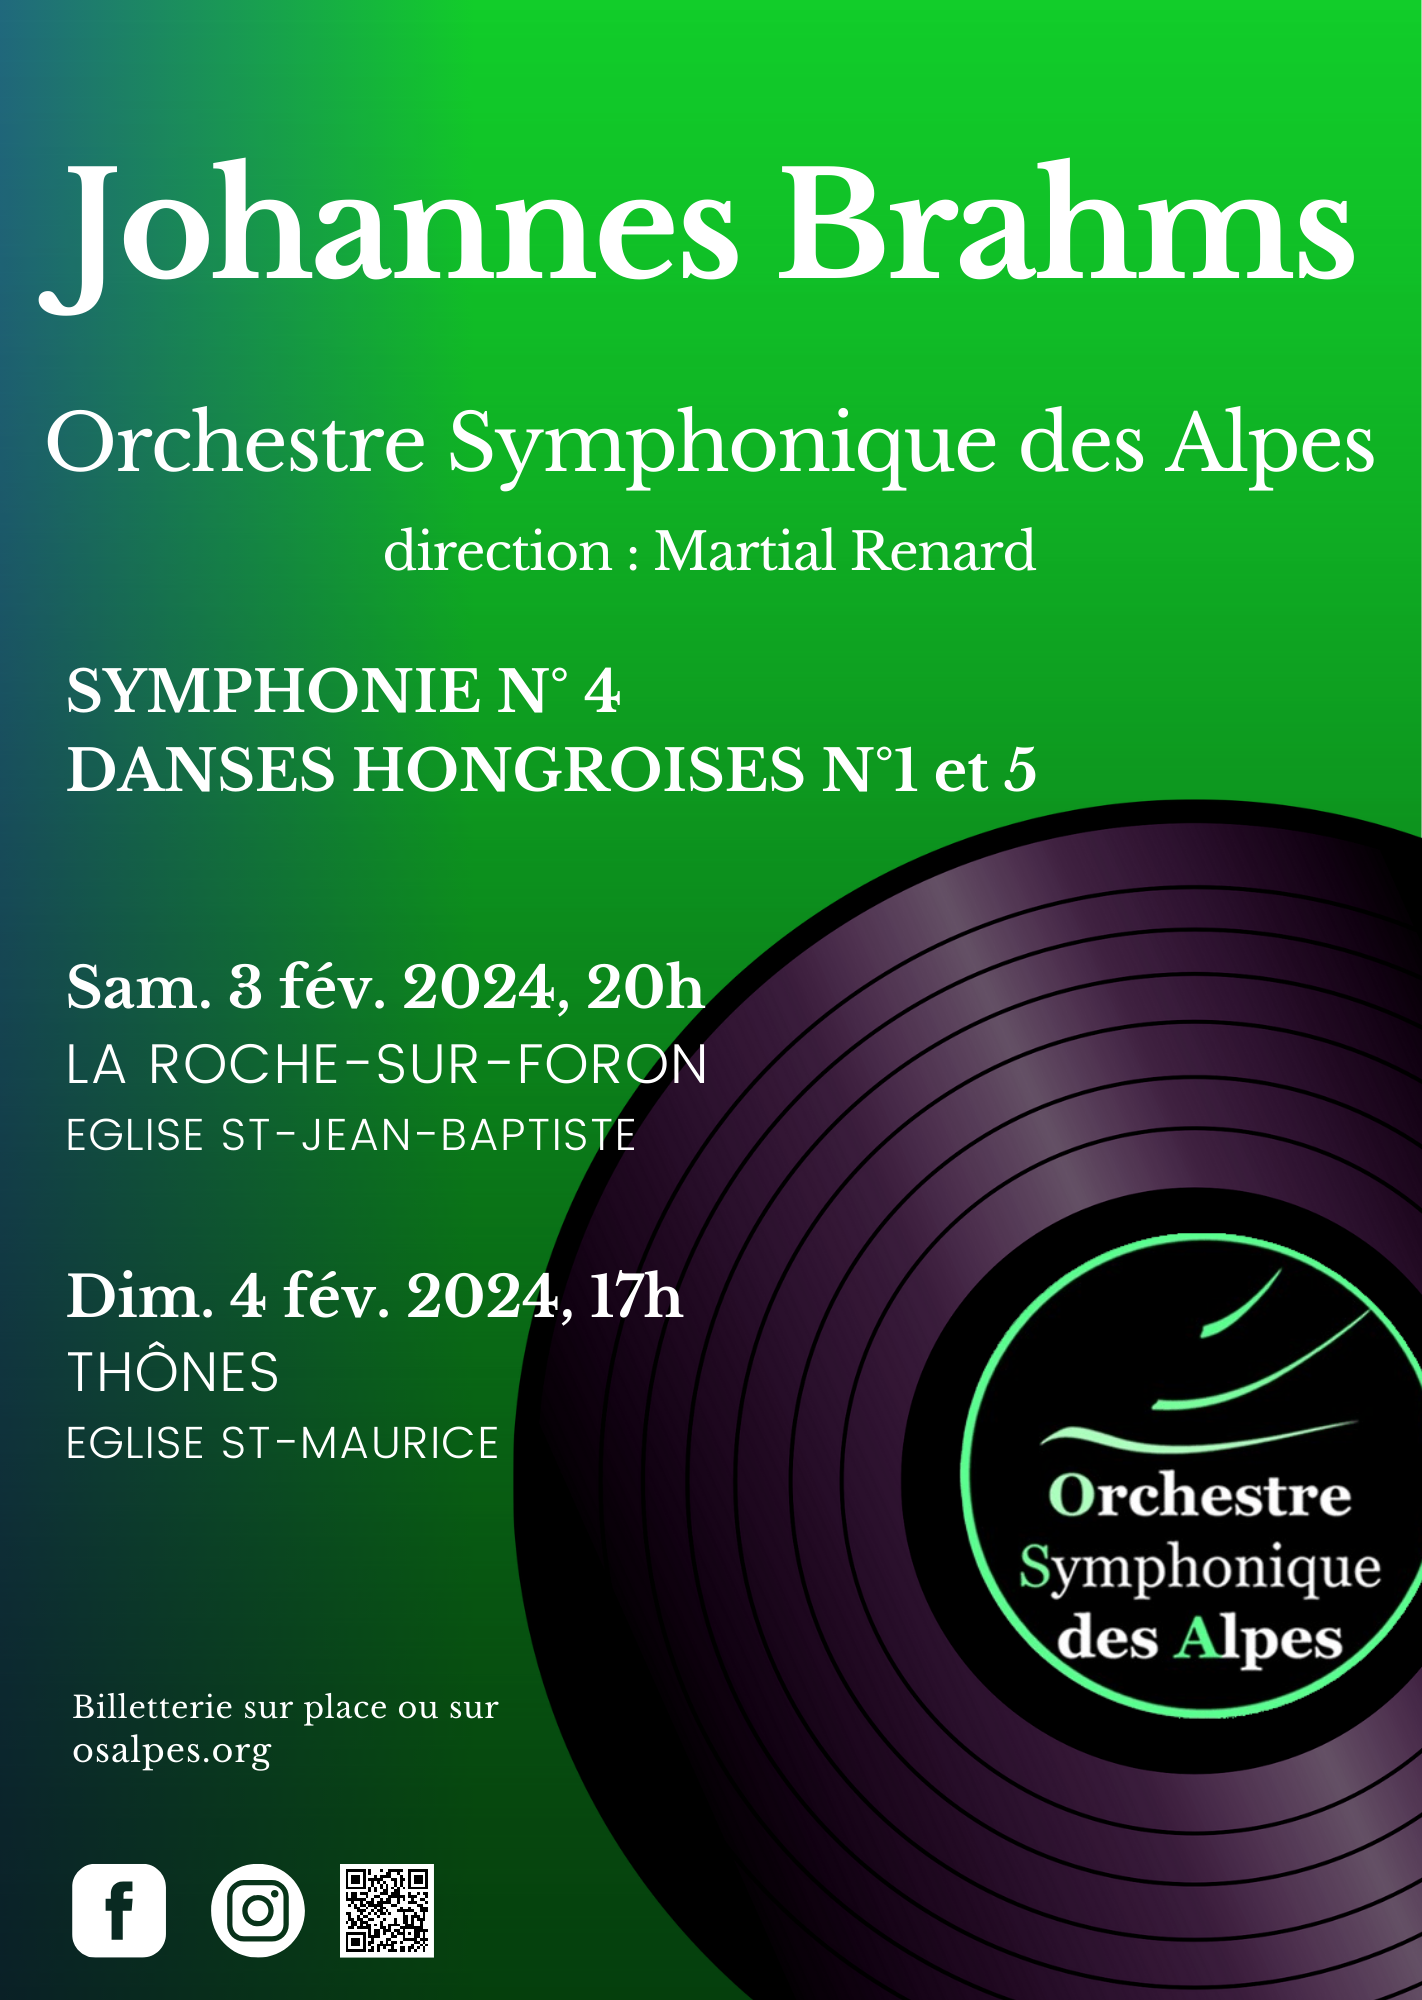 Johannes Brahms Orchestre Symphonique des Alpes Samedi 3 février 20h à l'Eglise de La Roche sur Foron Dimancche 4 février à 17:00 à l'Eglise de Thônes